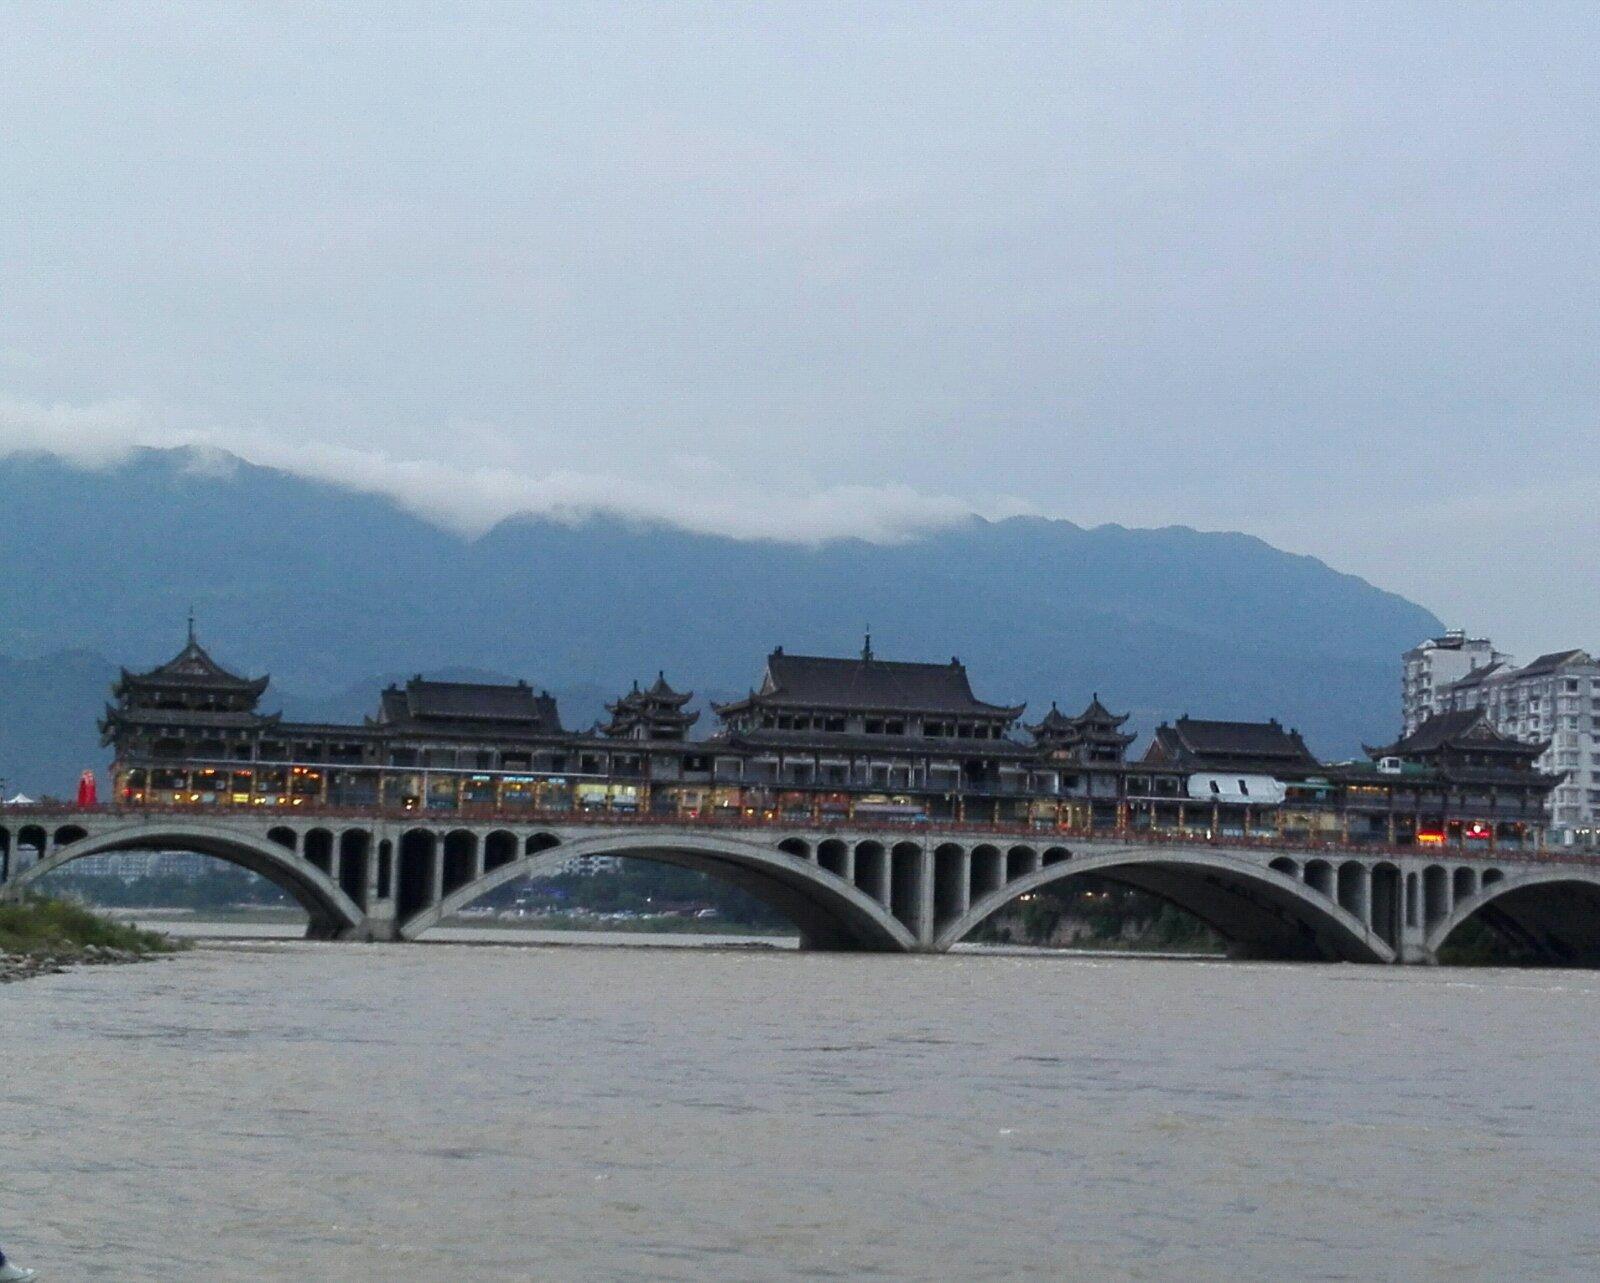 雅州廊桥,又名雅安廊桥,是国内最长最大的廊桥,雅安城有'雅雨''